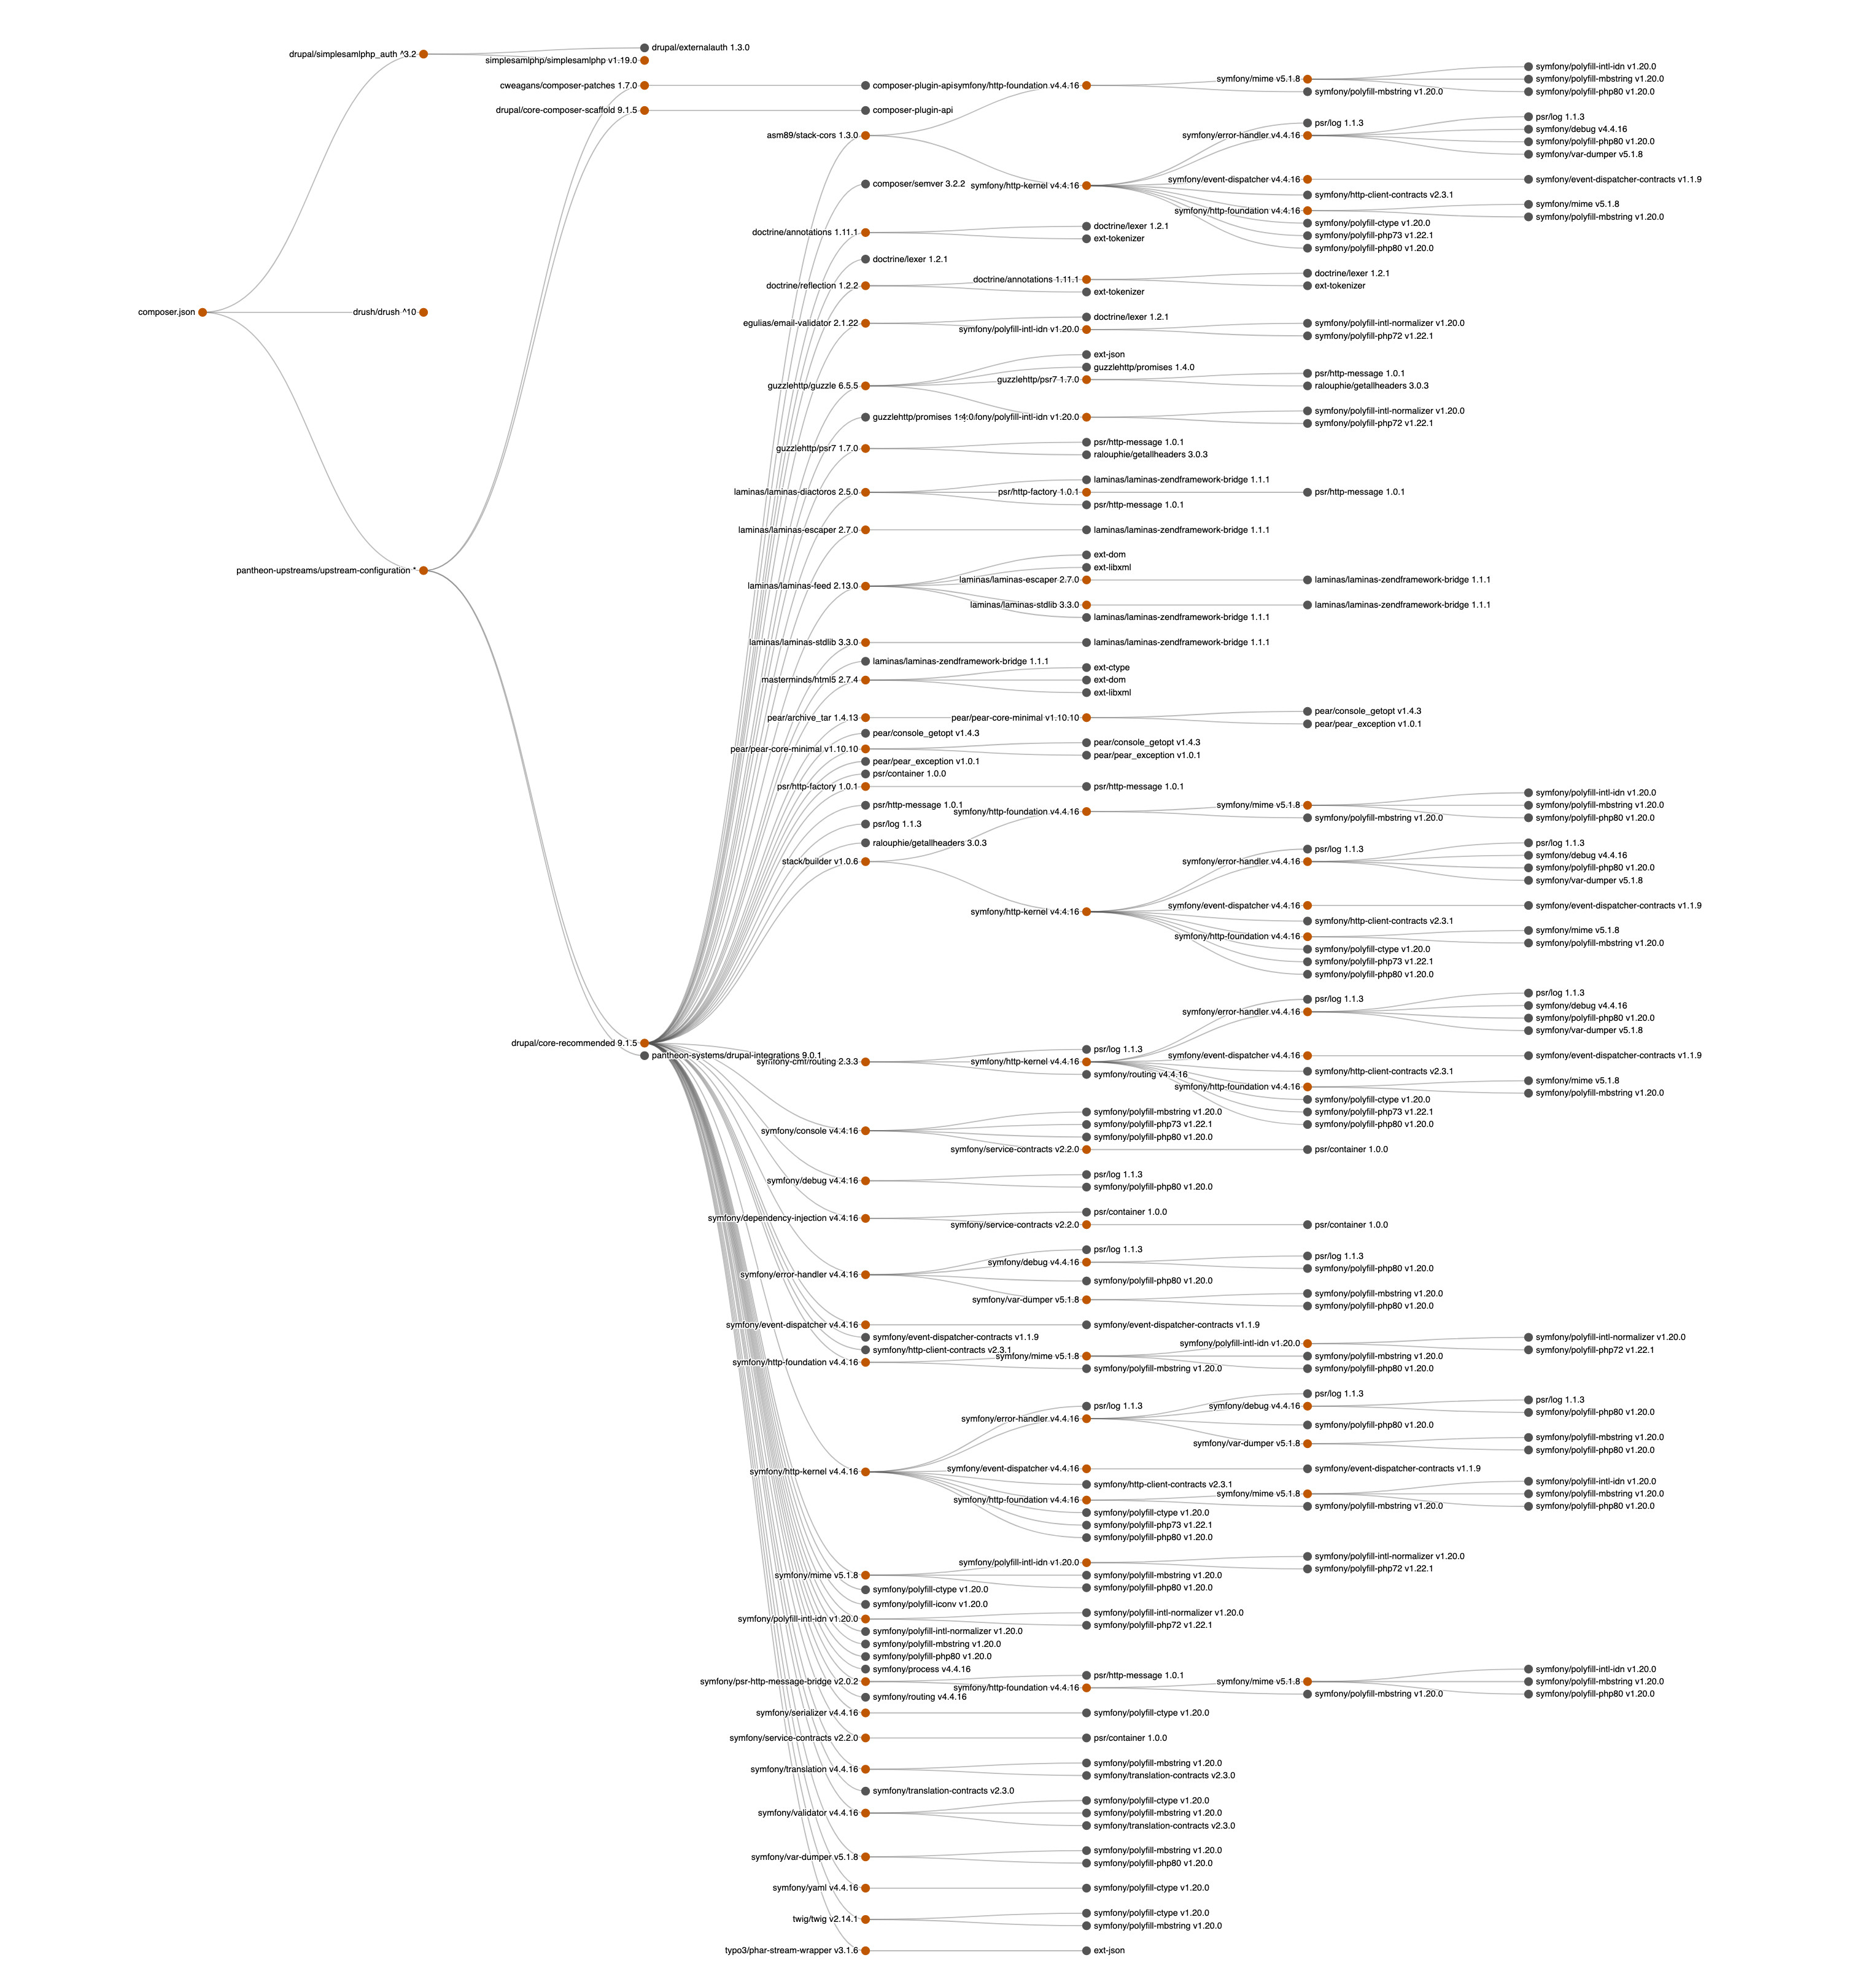 Screenshot of complex dependency tree